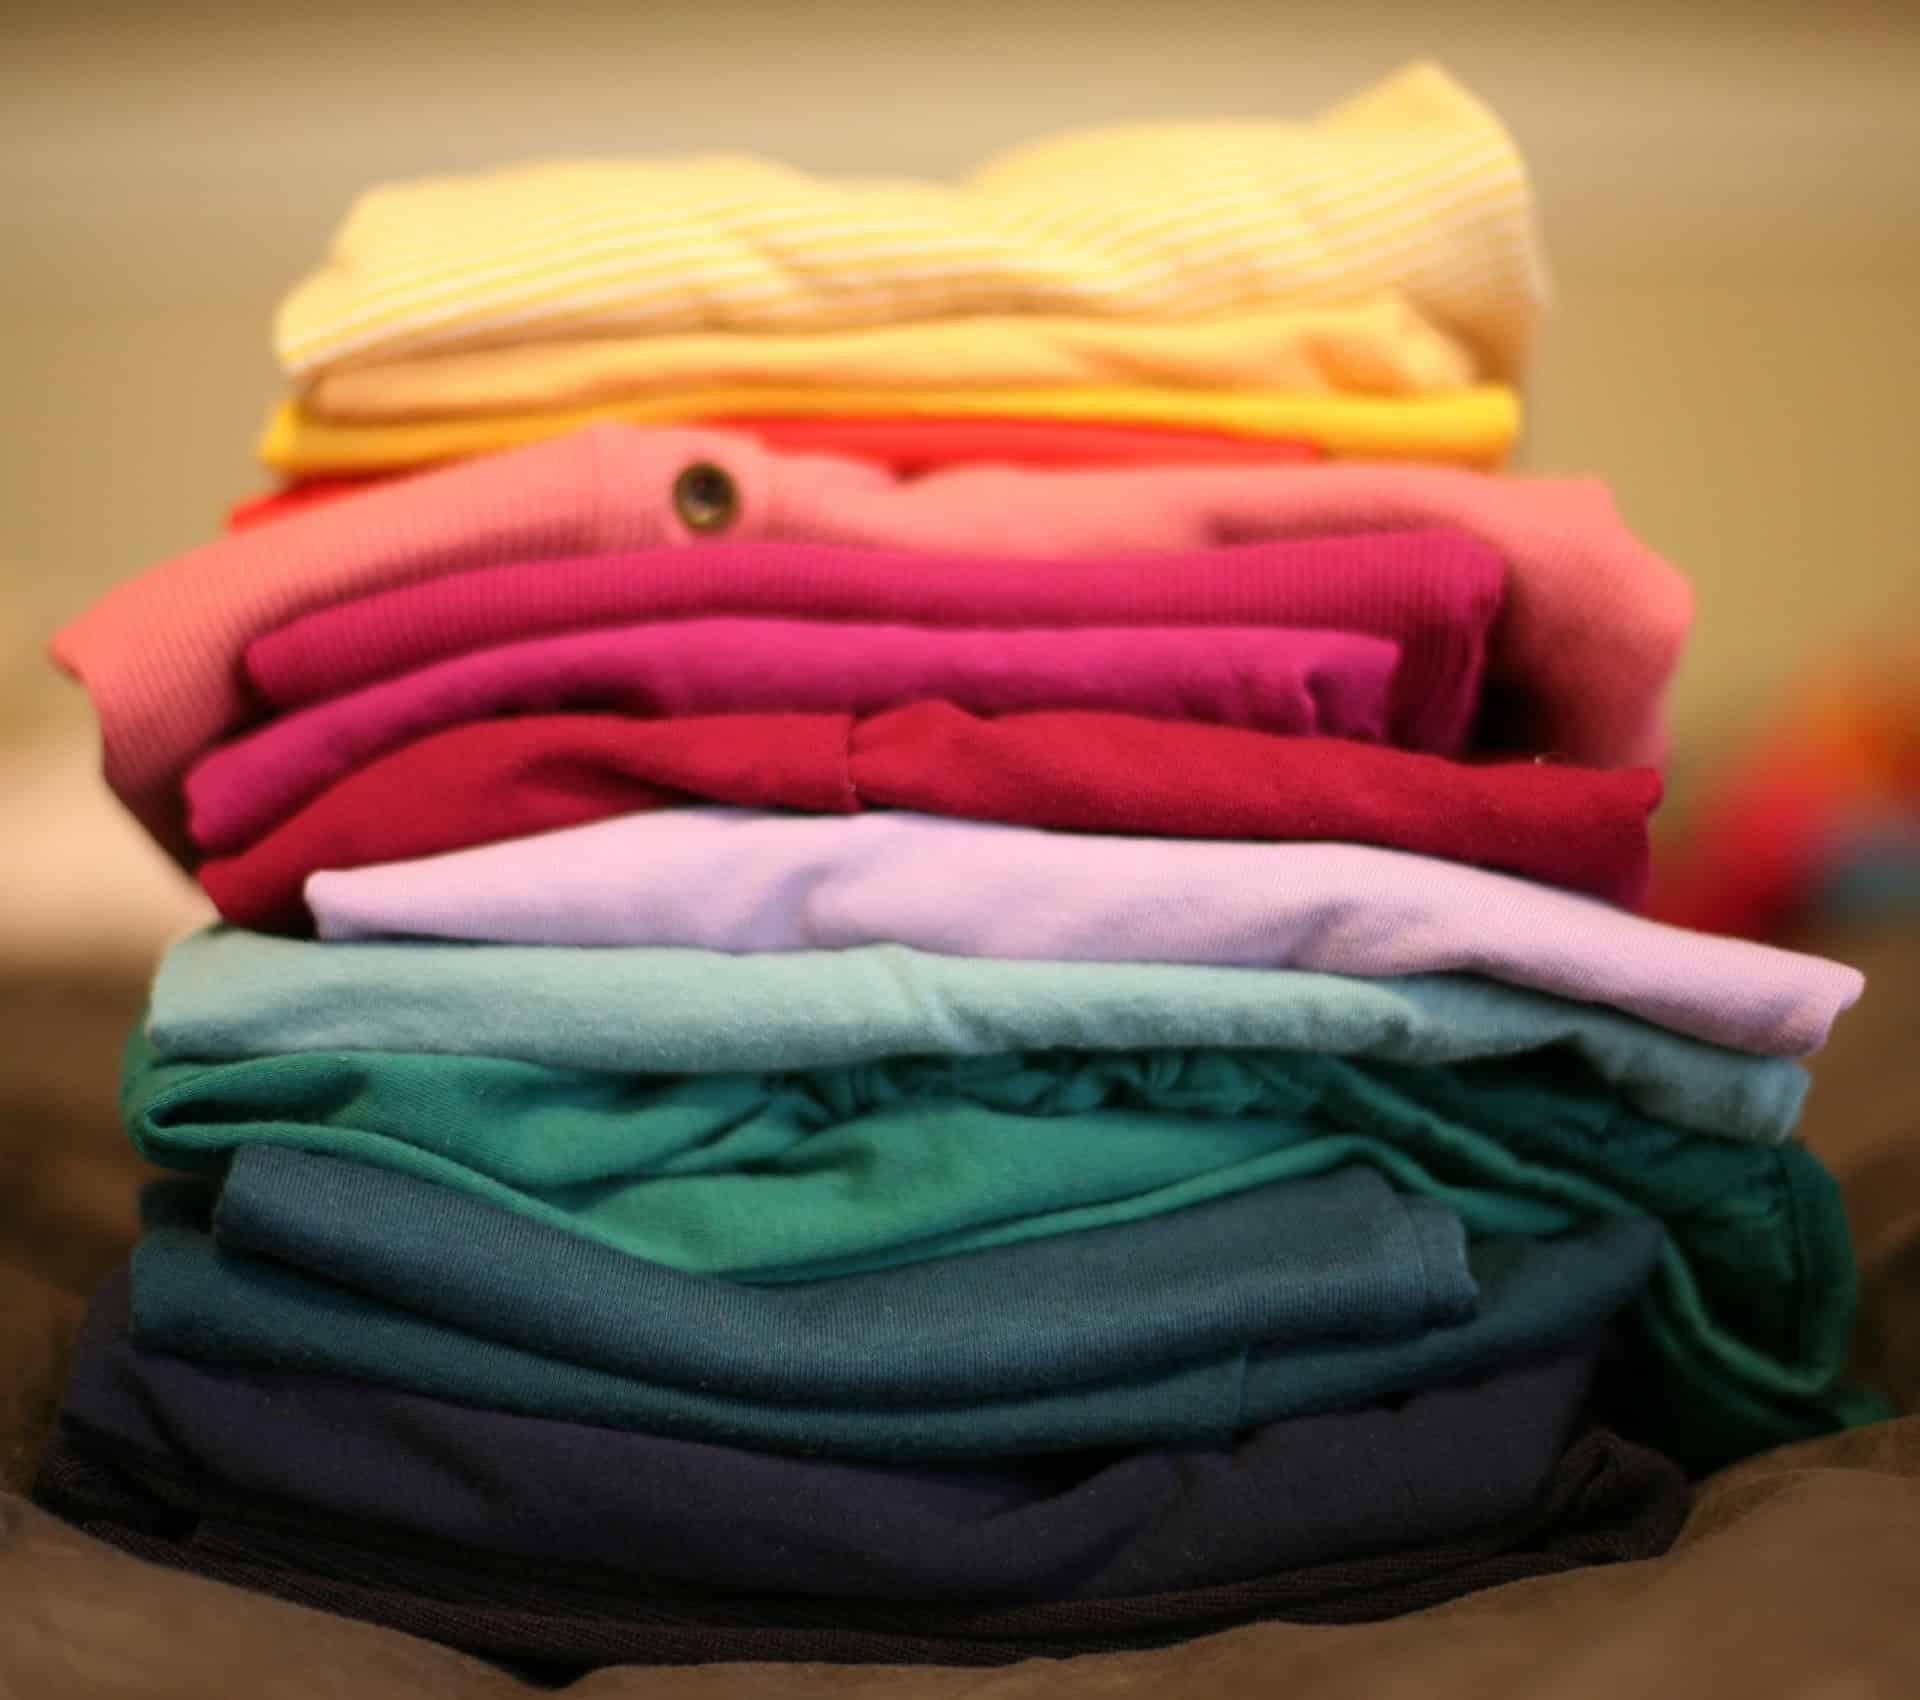 stack of folded clothing